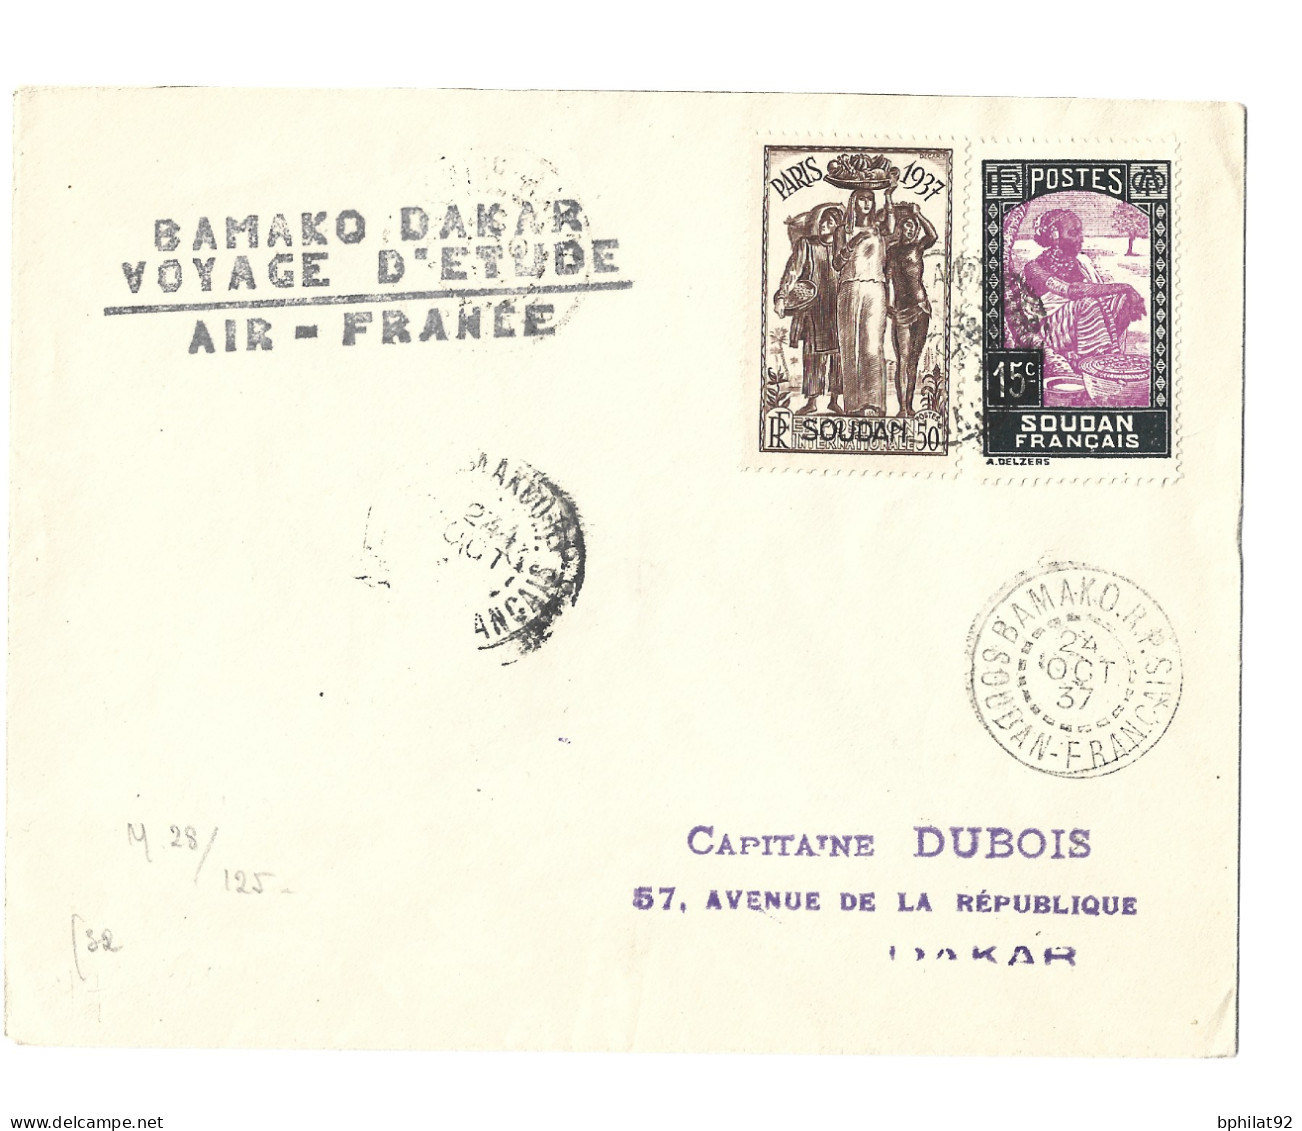 !!! BAMAKO-DAKAR, VOYAGE D'ÉTUDE AIR FRANCE OCTOBRE 1937, CACHET DU SOUDAN FRANÇAIS - Covers & Documents